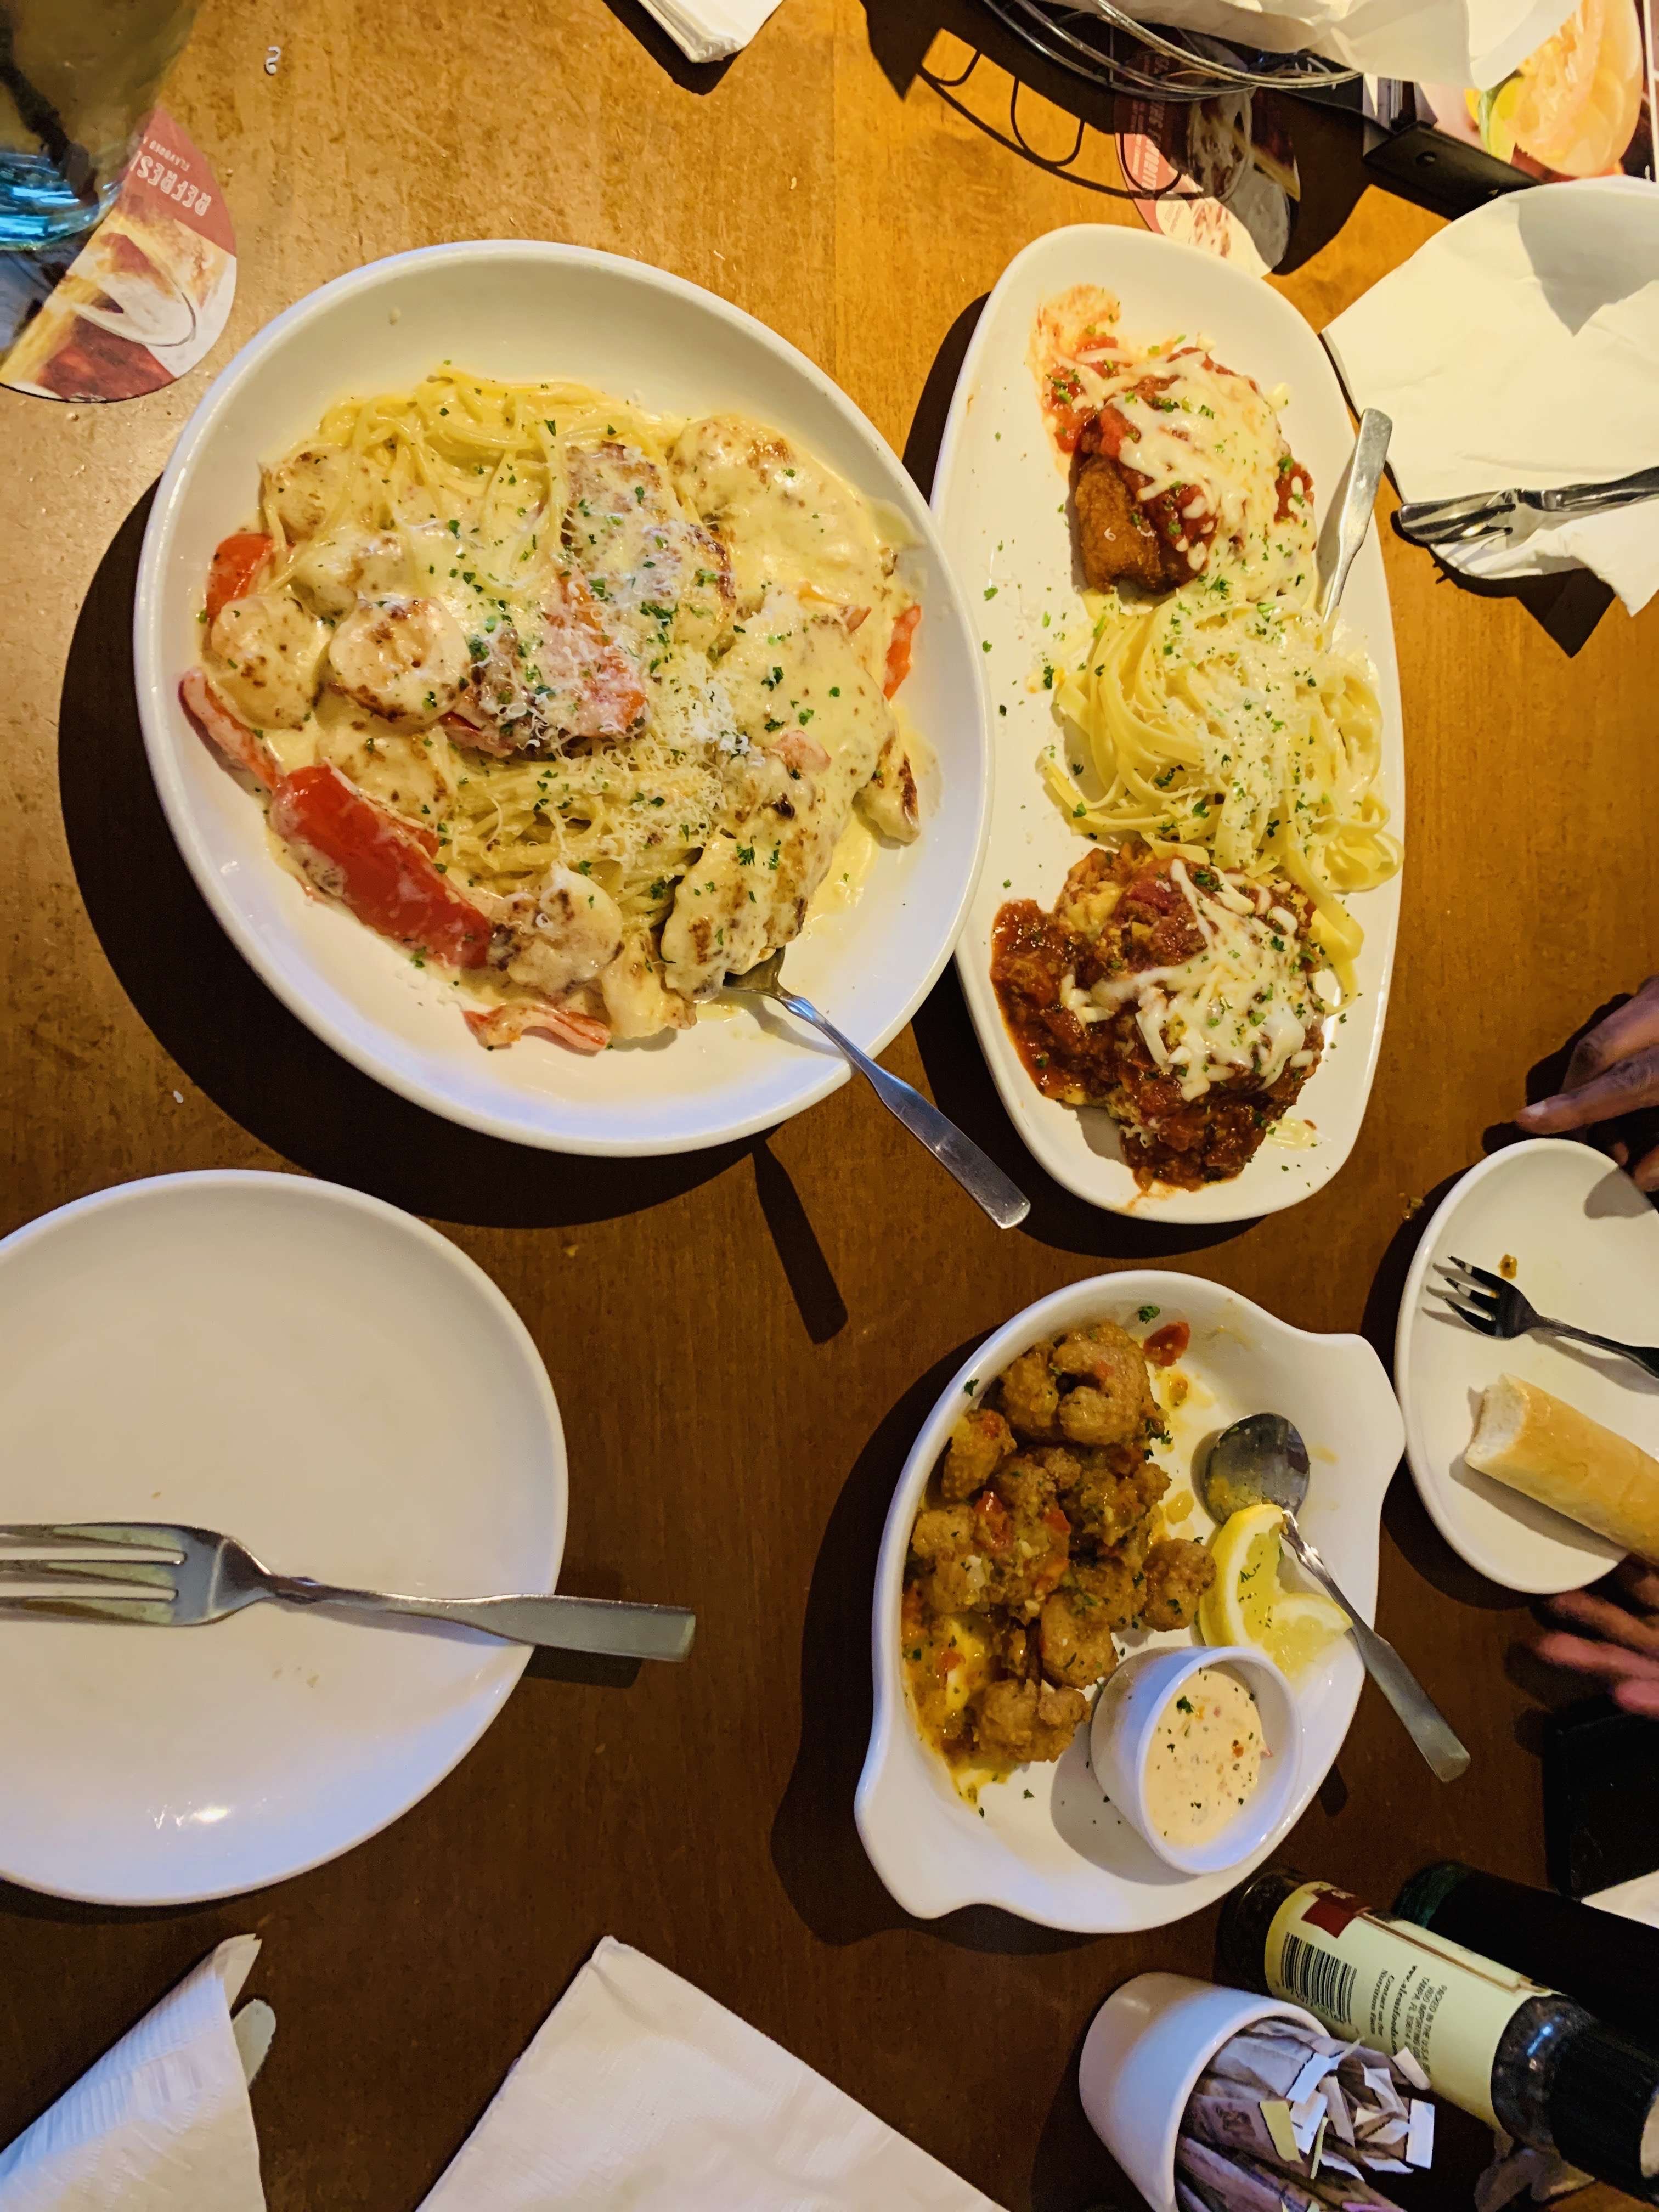 Olive Garden Italian Restaurant Reviews User Reviews For Olive